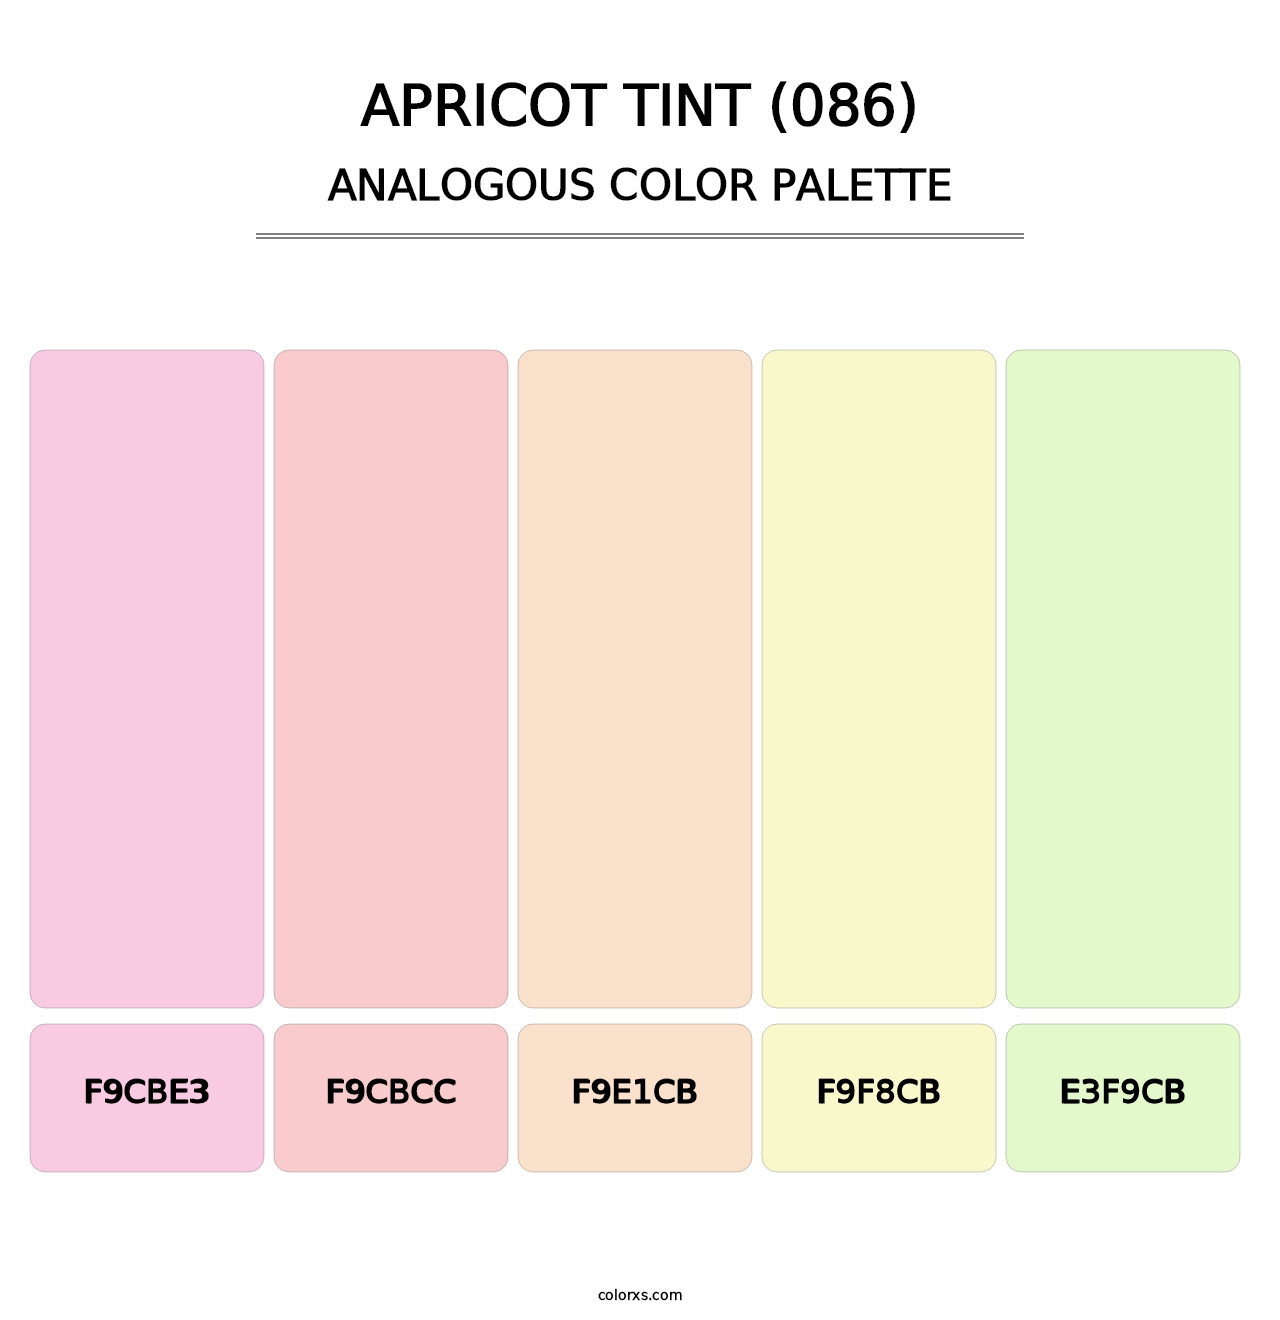 Apricot Tint (086) - Analogous Color Palette